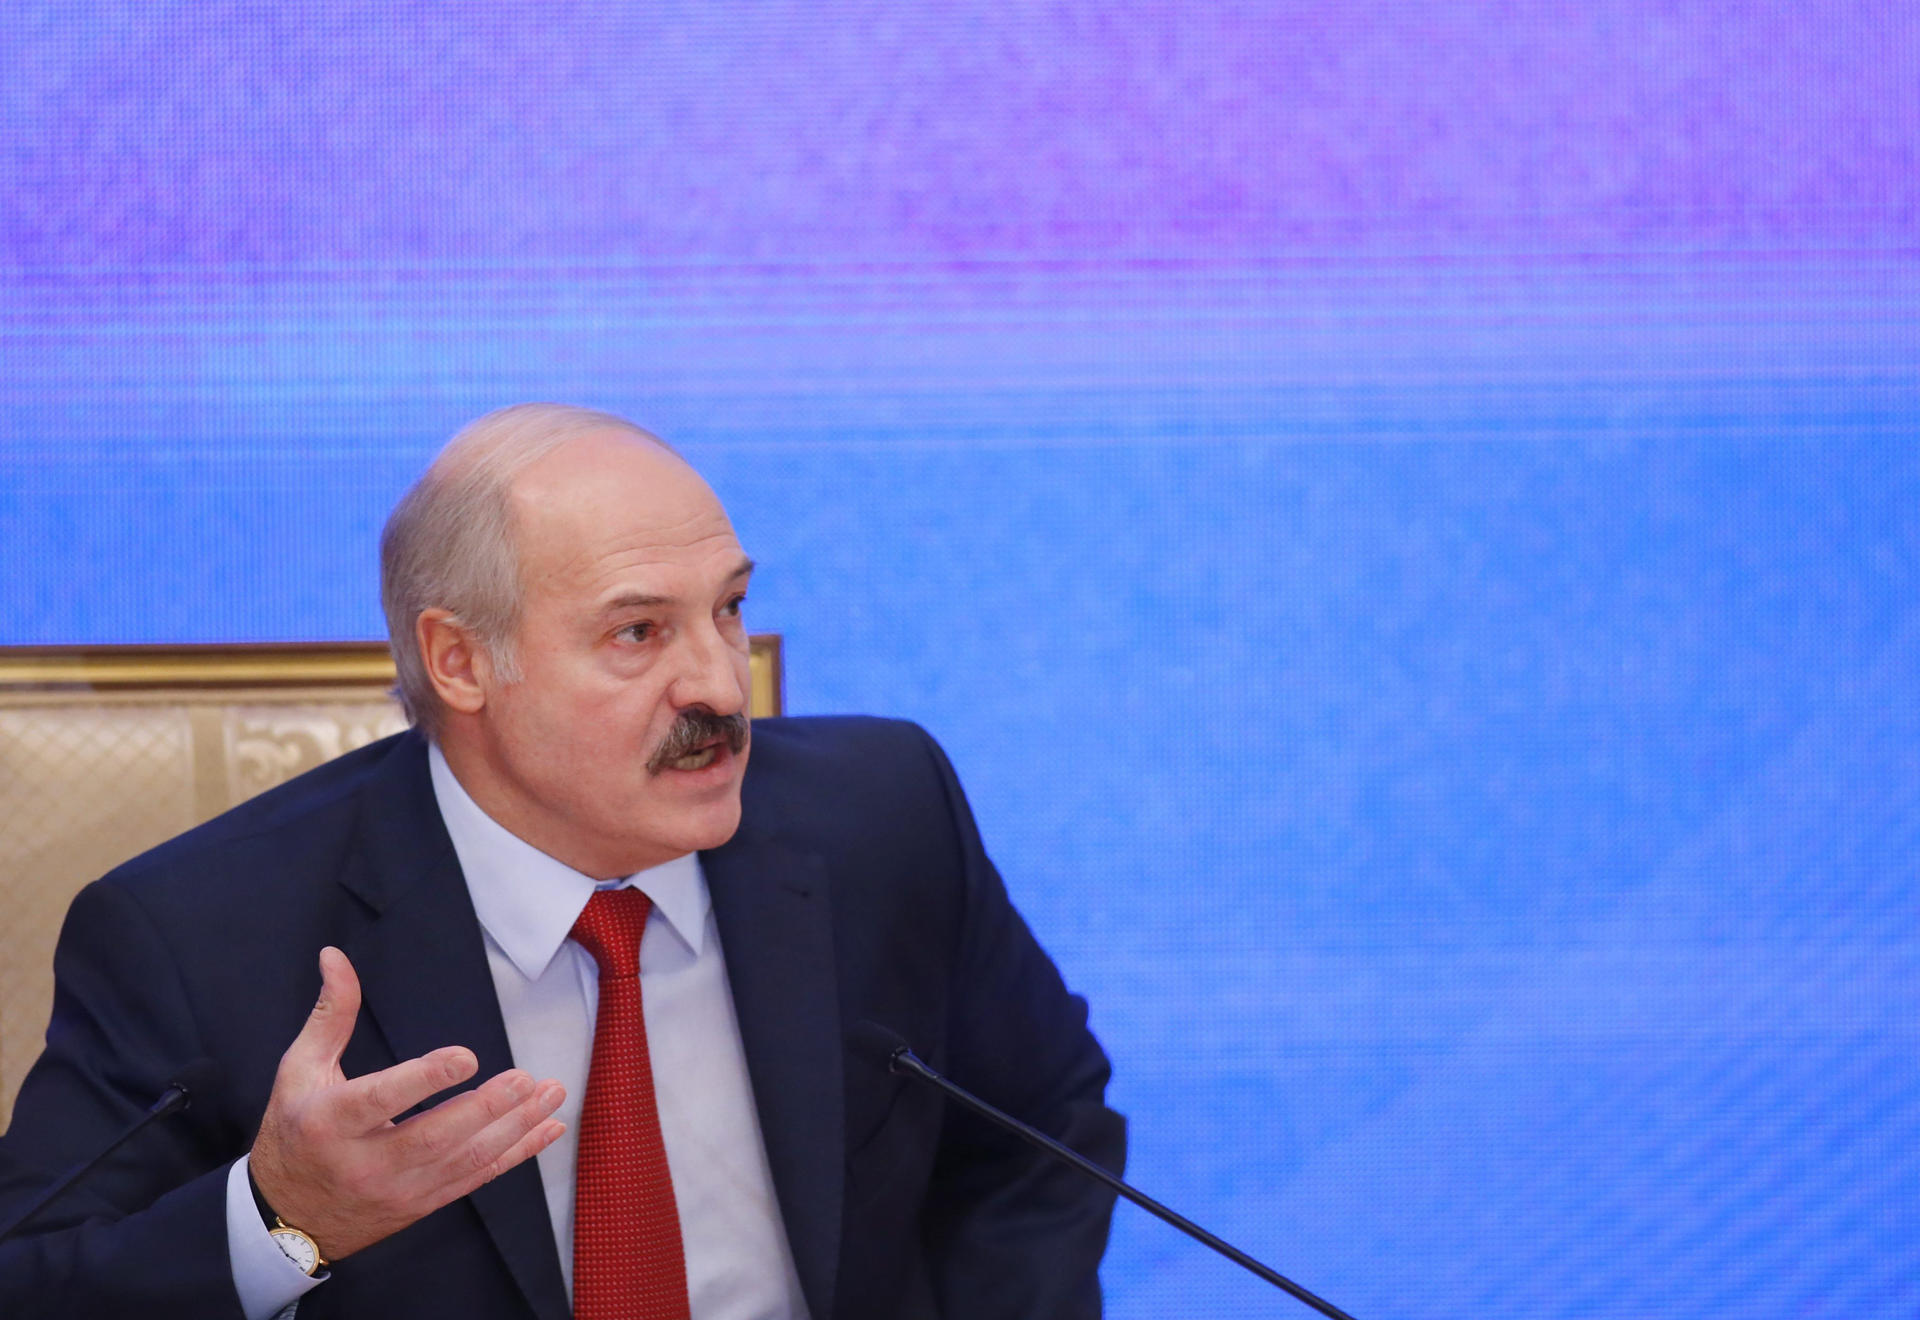 Foto de arquivo do presidente bielorrusso Alexander Lukashenko durante uma coletiva de imprensa em Minsk, Belarus, em 29 de janeiro de 2015. EPA/ARQUIVO/SERGEI GRITS/ POOL